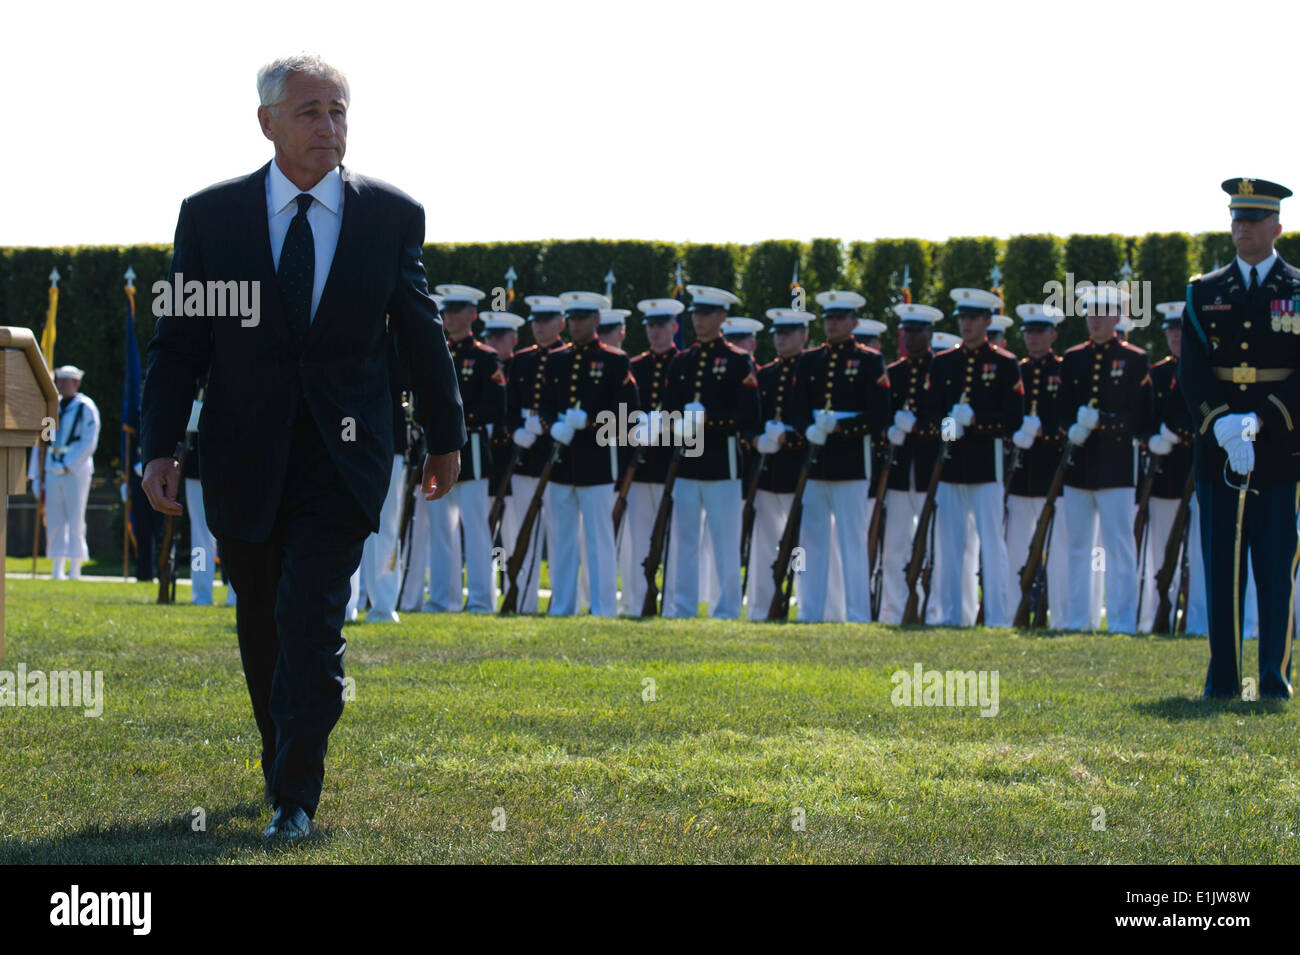 Le secrétaire à la défense Chuck Hagel, premier plan, marche à travers le champ de parade, le 20 septembre 2013, lors d'une cérémonie à se souvenir de priso Banque D'Images